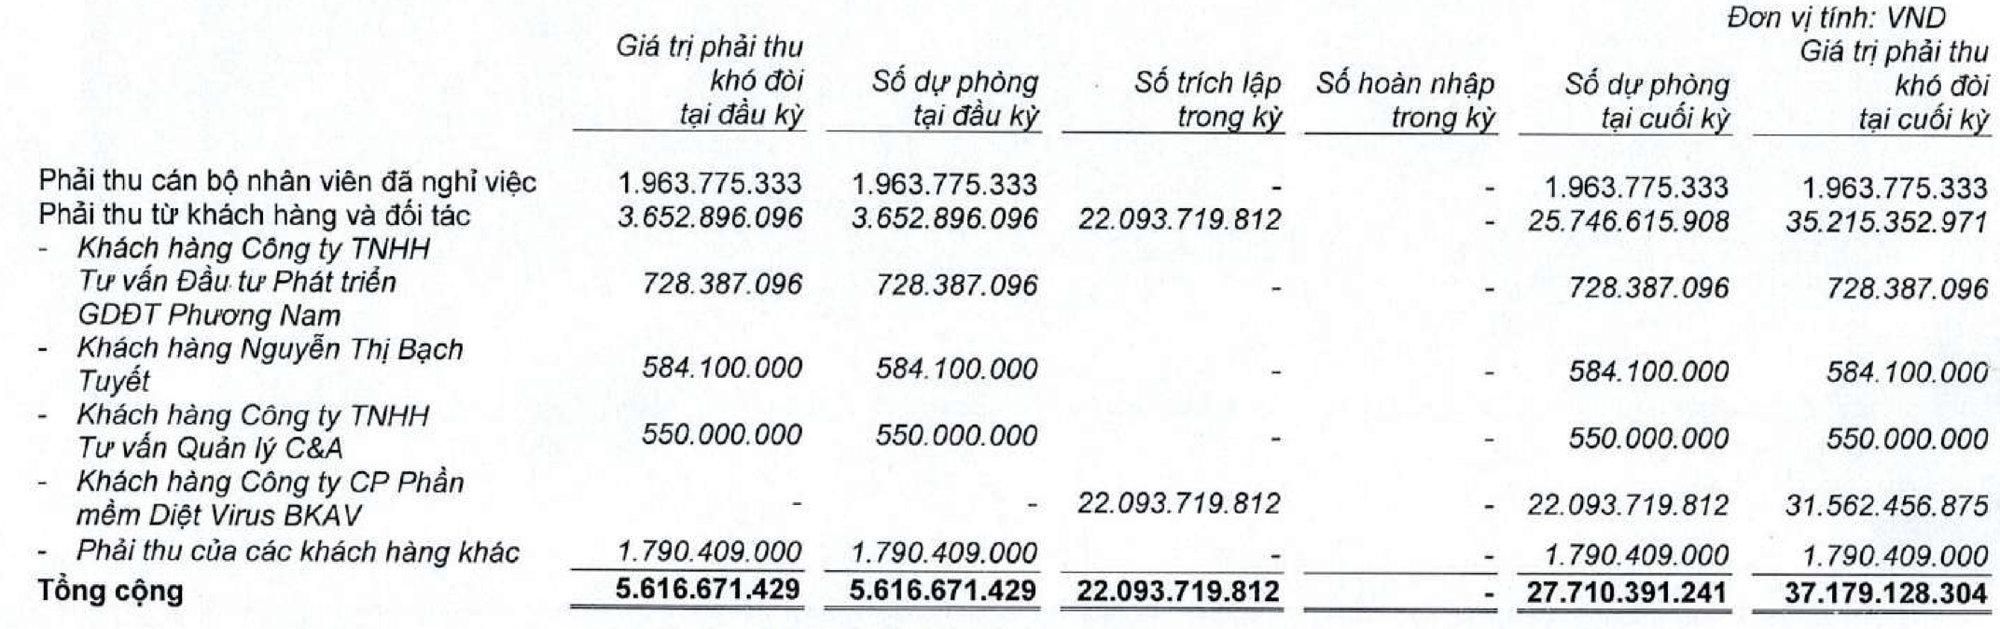 Bkav Pro của ông Nguyễn Từ Quảng: Từ mức giá 2.100 tỷ đồng, vay tiền cho giấc mơ Bphone đến cú trượt về lợi nhuận và nợ khó đòi tại VNDirect- Ảnh 1.